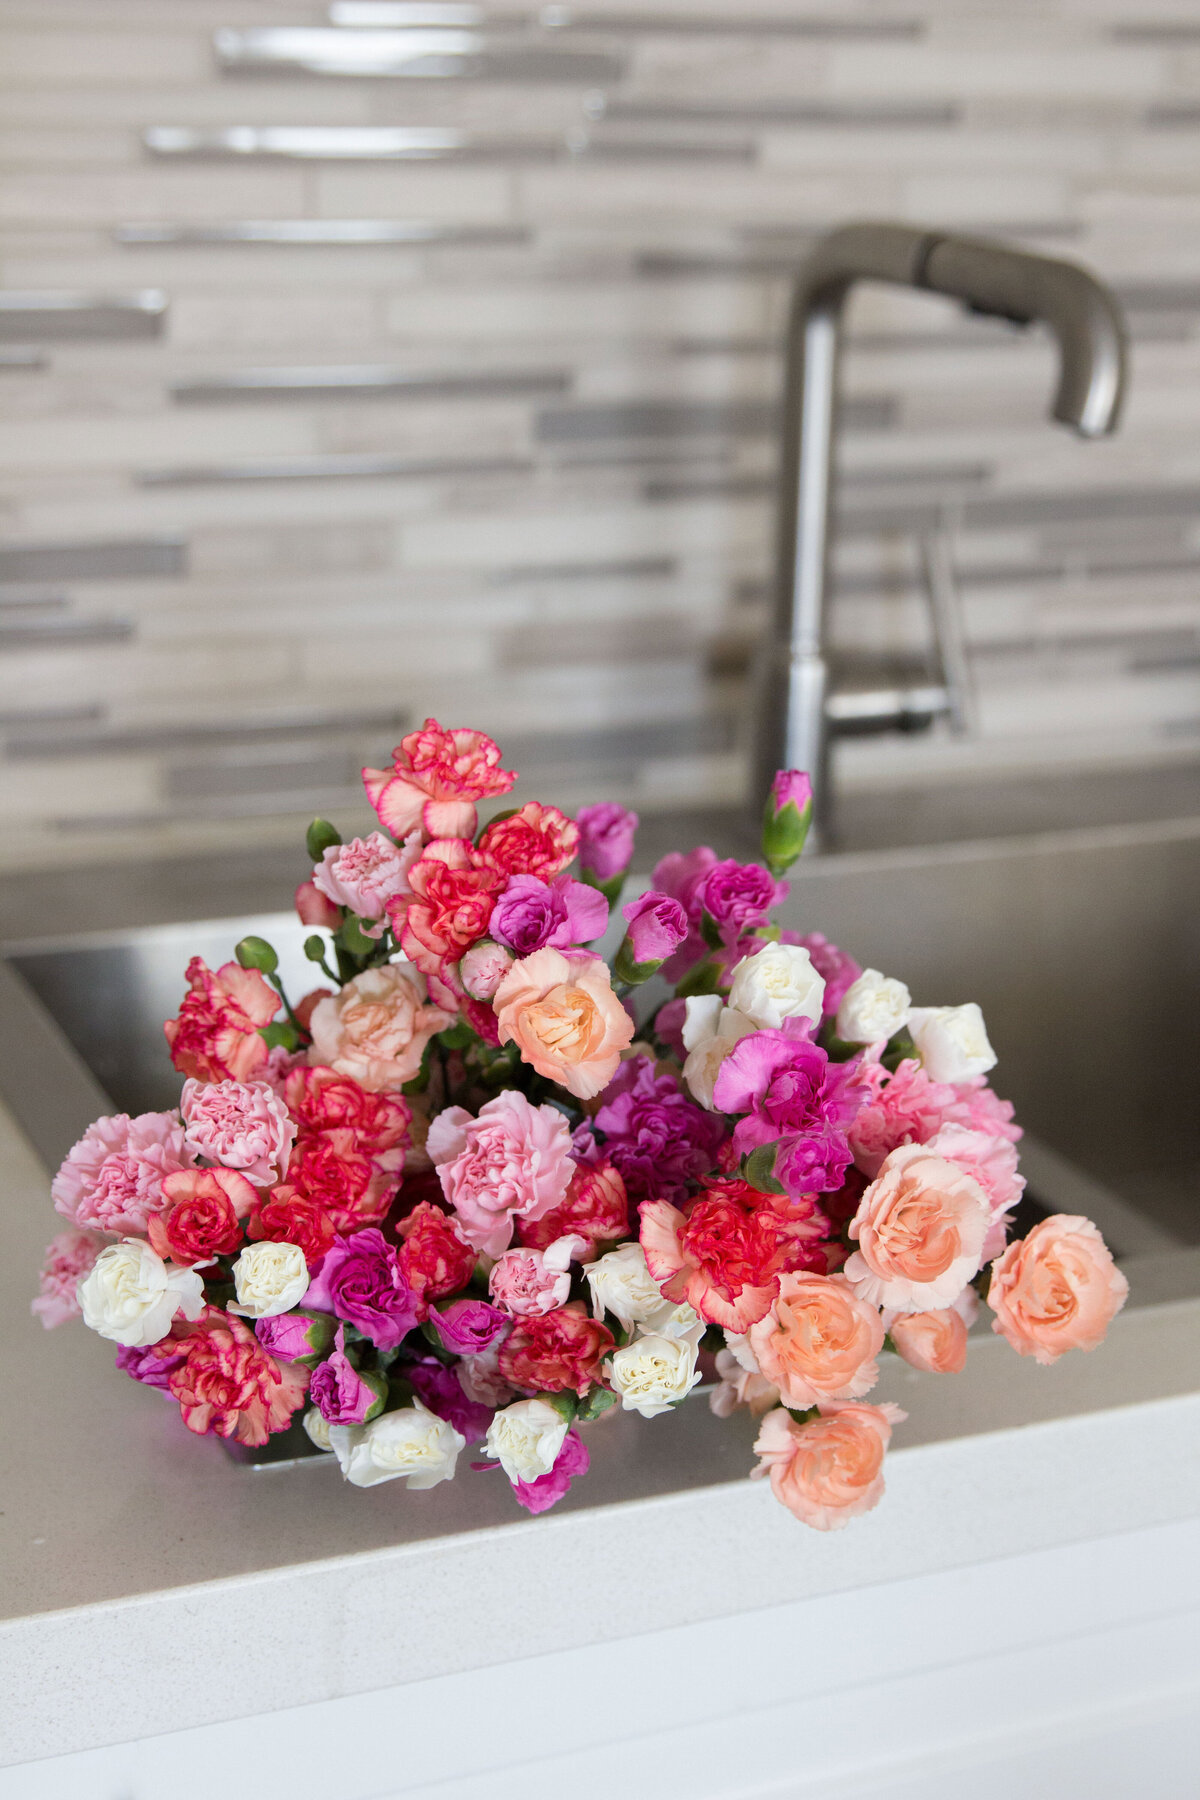 flowers-in-sink